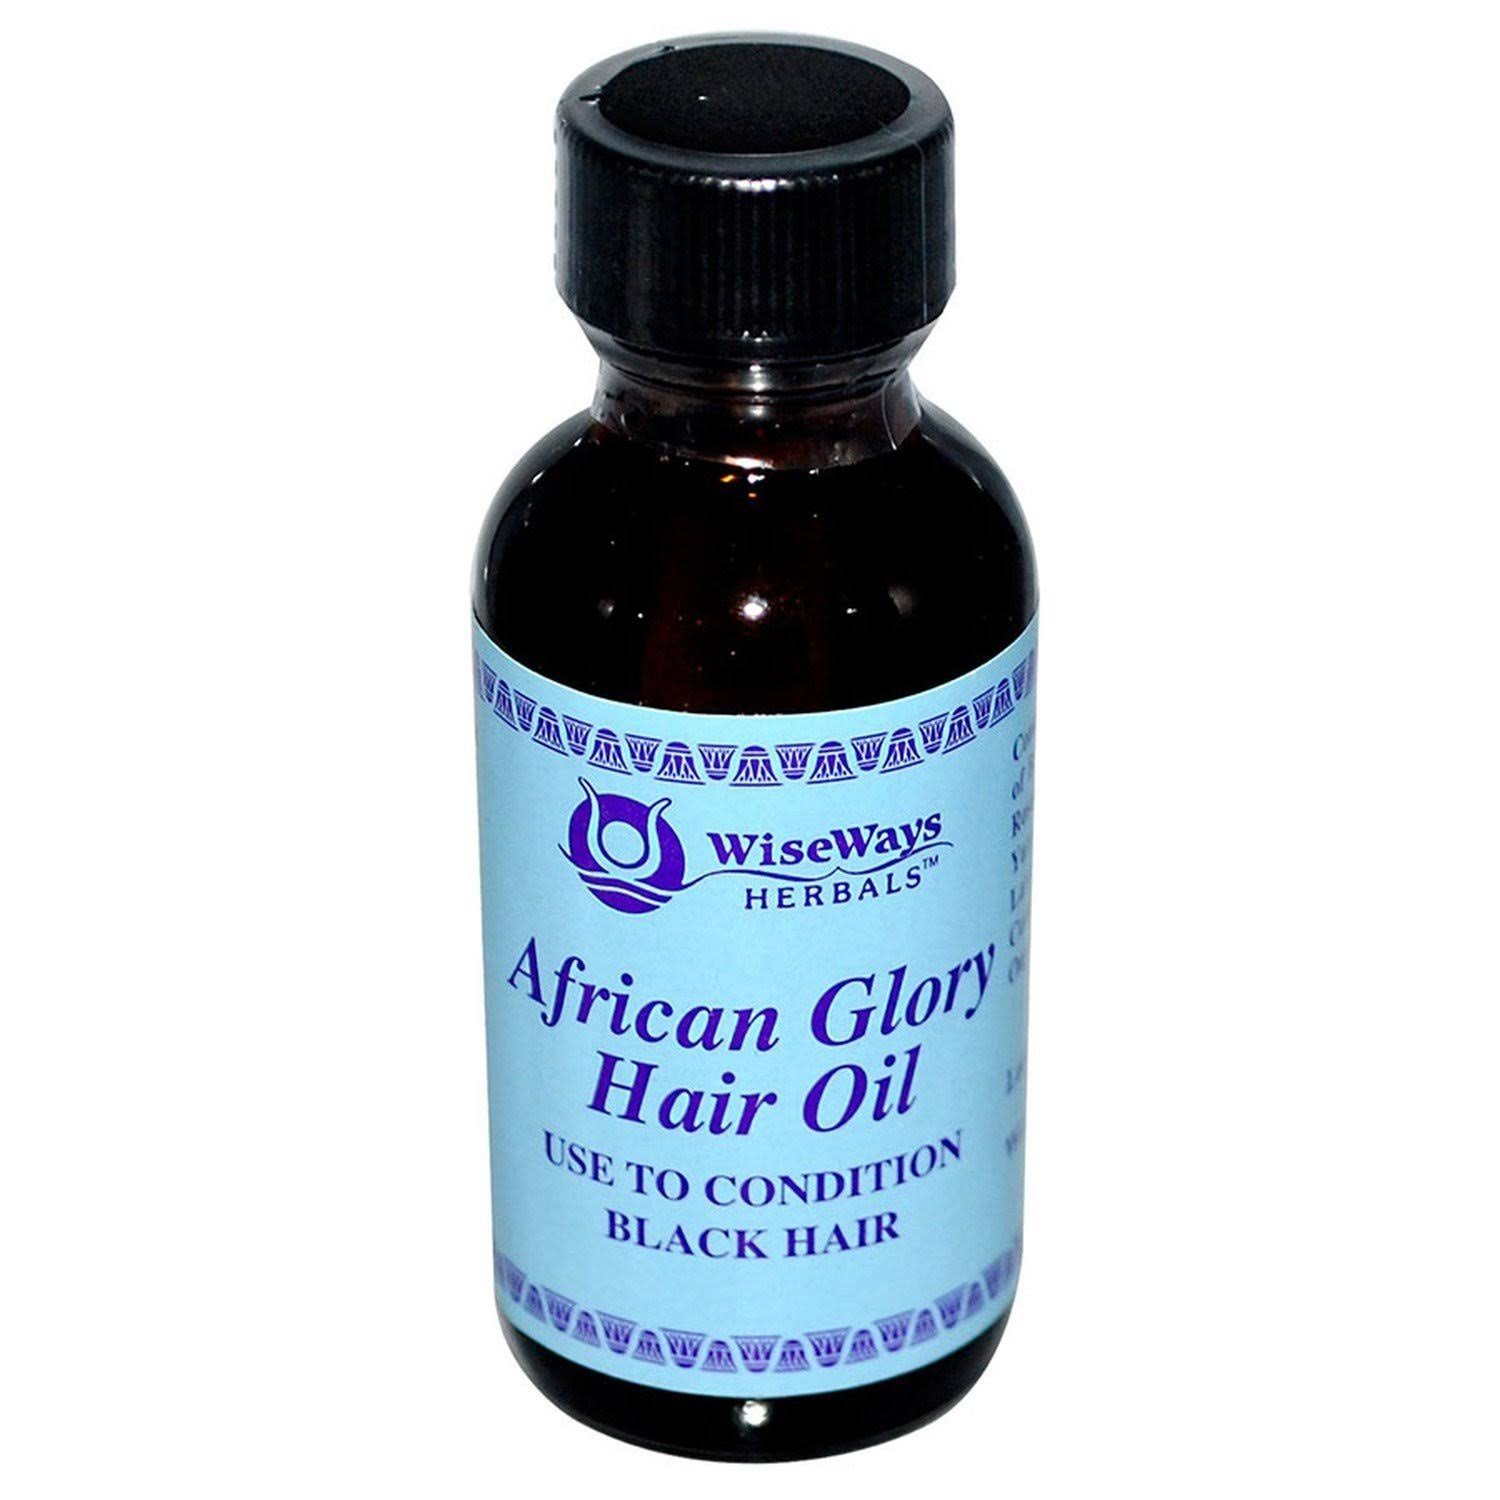 Wiseways Herbals African Glory Hair Oil - 2 Oz